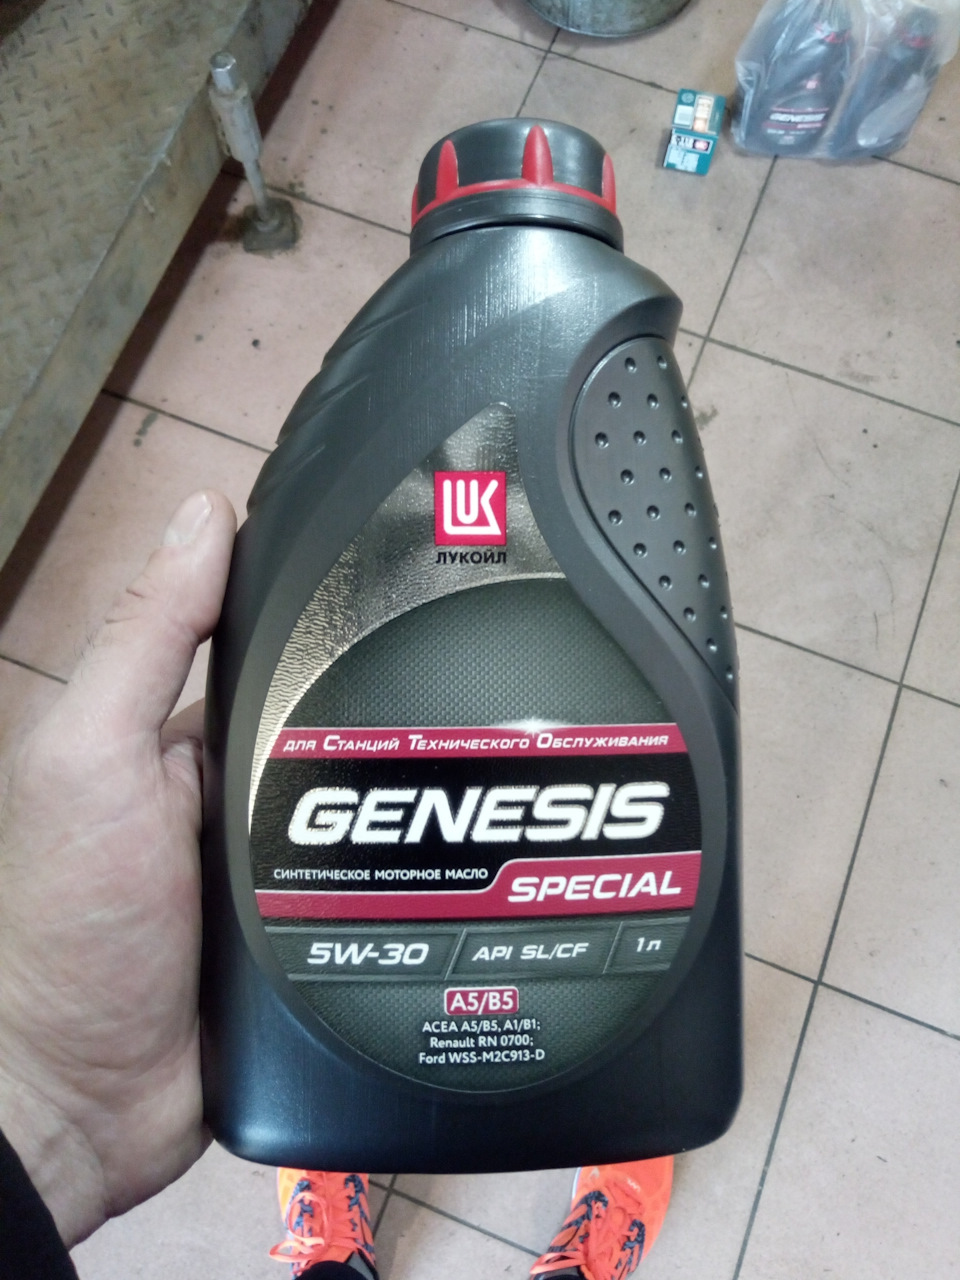 Lukoil genesis special